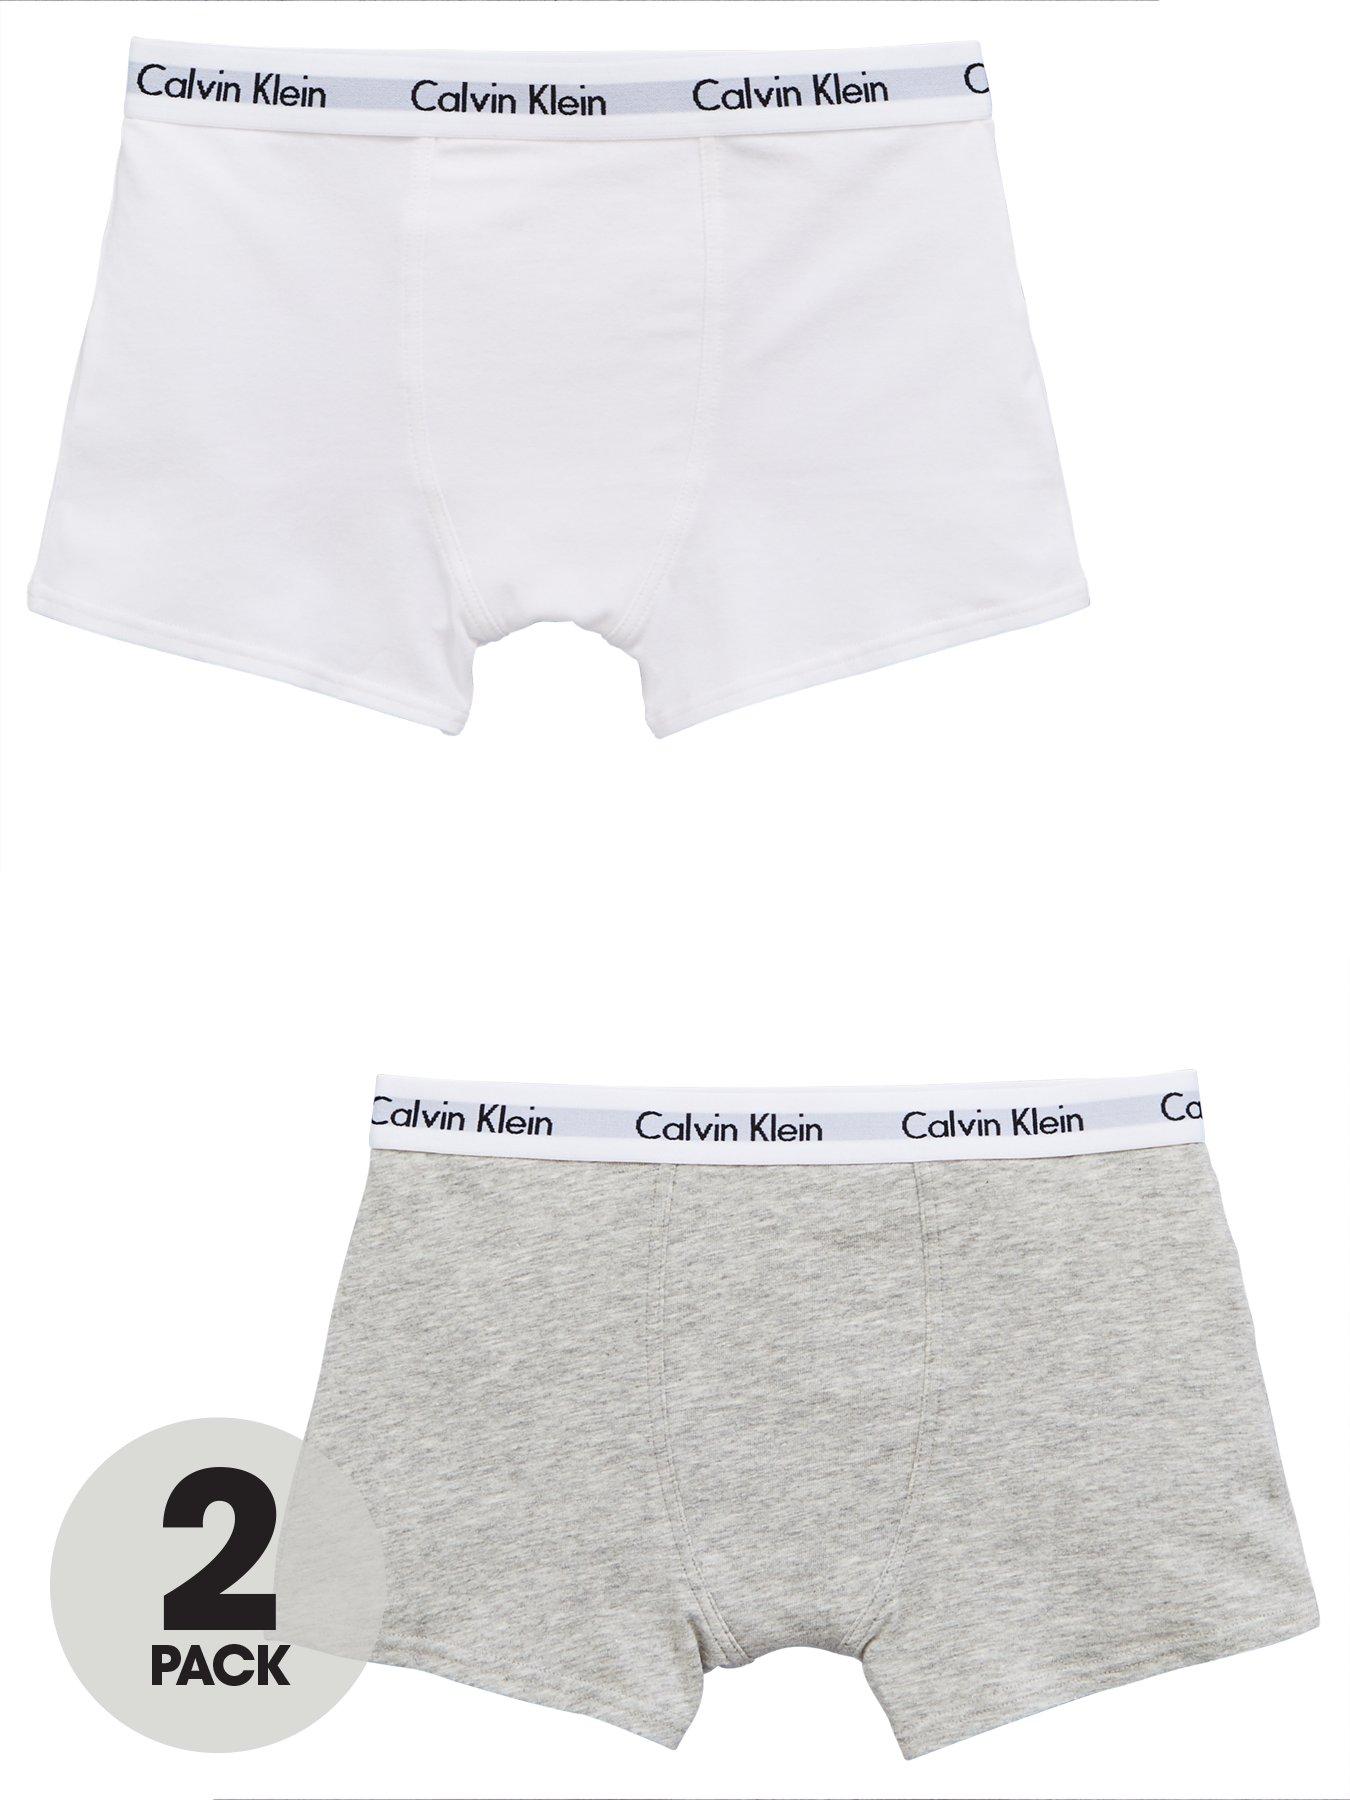 Calvin Klein Underwear Child Top Sellers, UP TO 70% OFF | www 